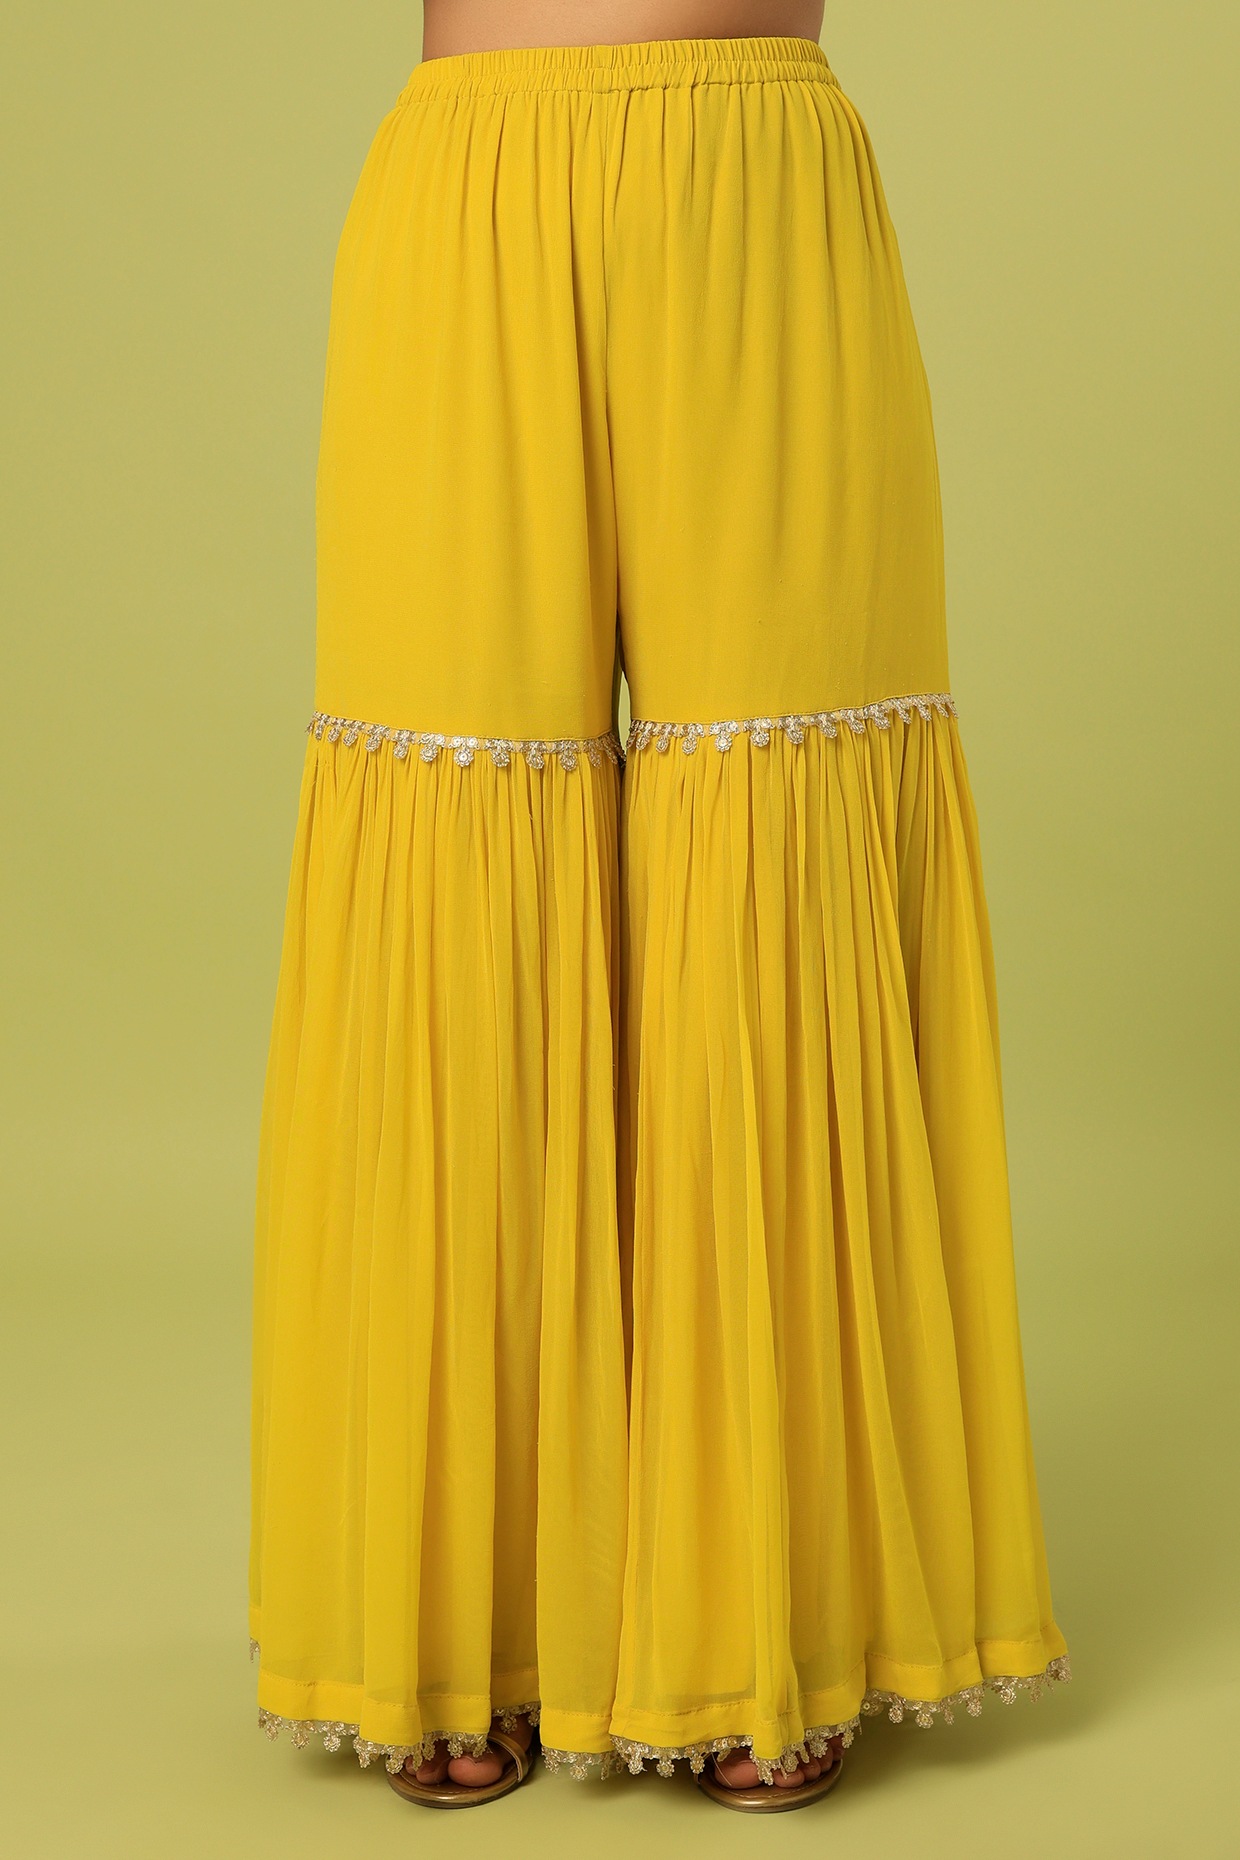 Ethnic Mustard Yellow Sharara Suit with Resham Work LSTV122563